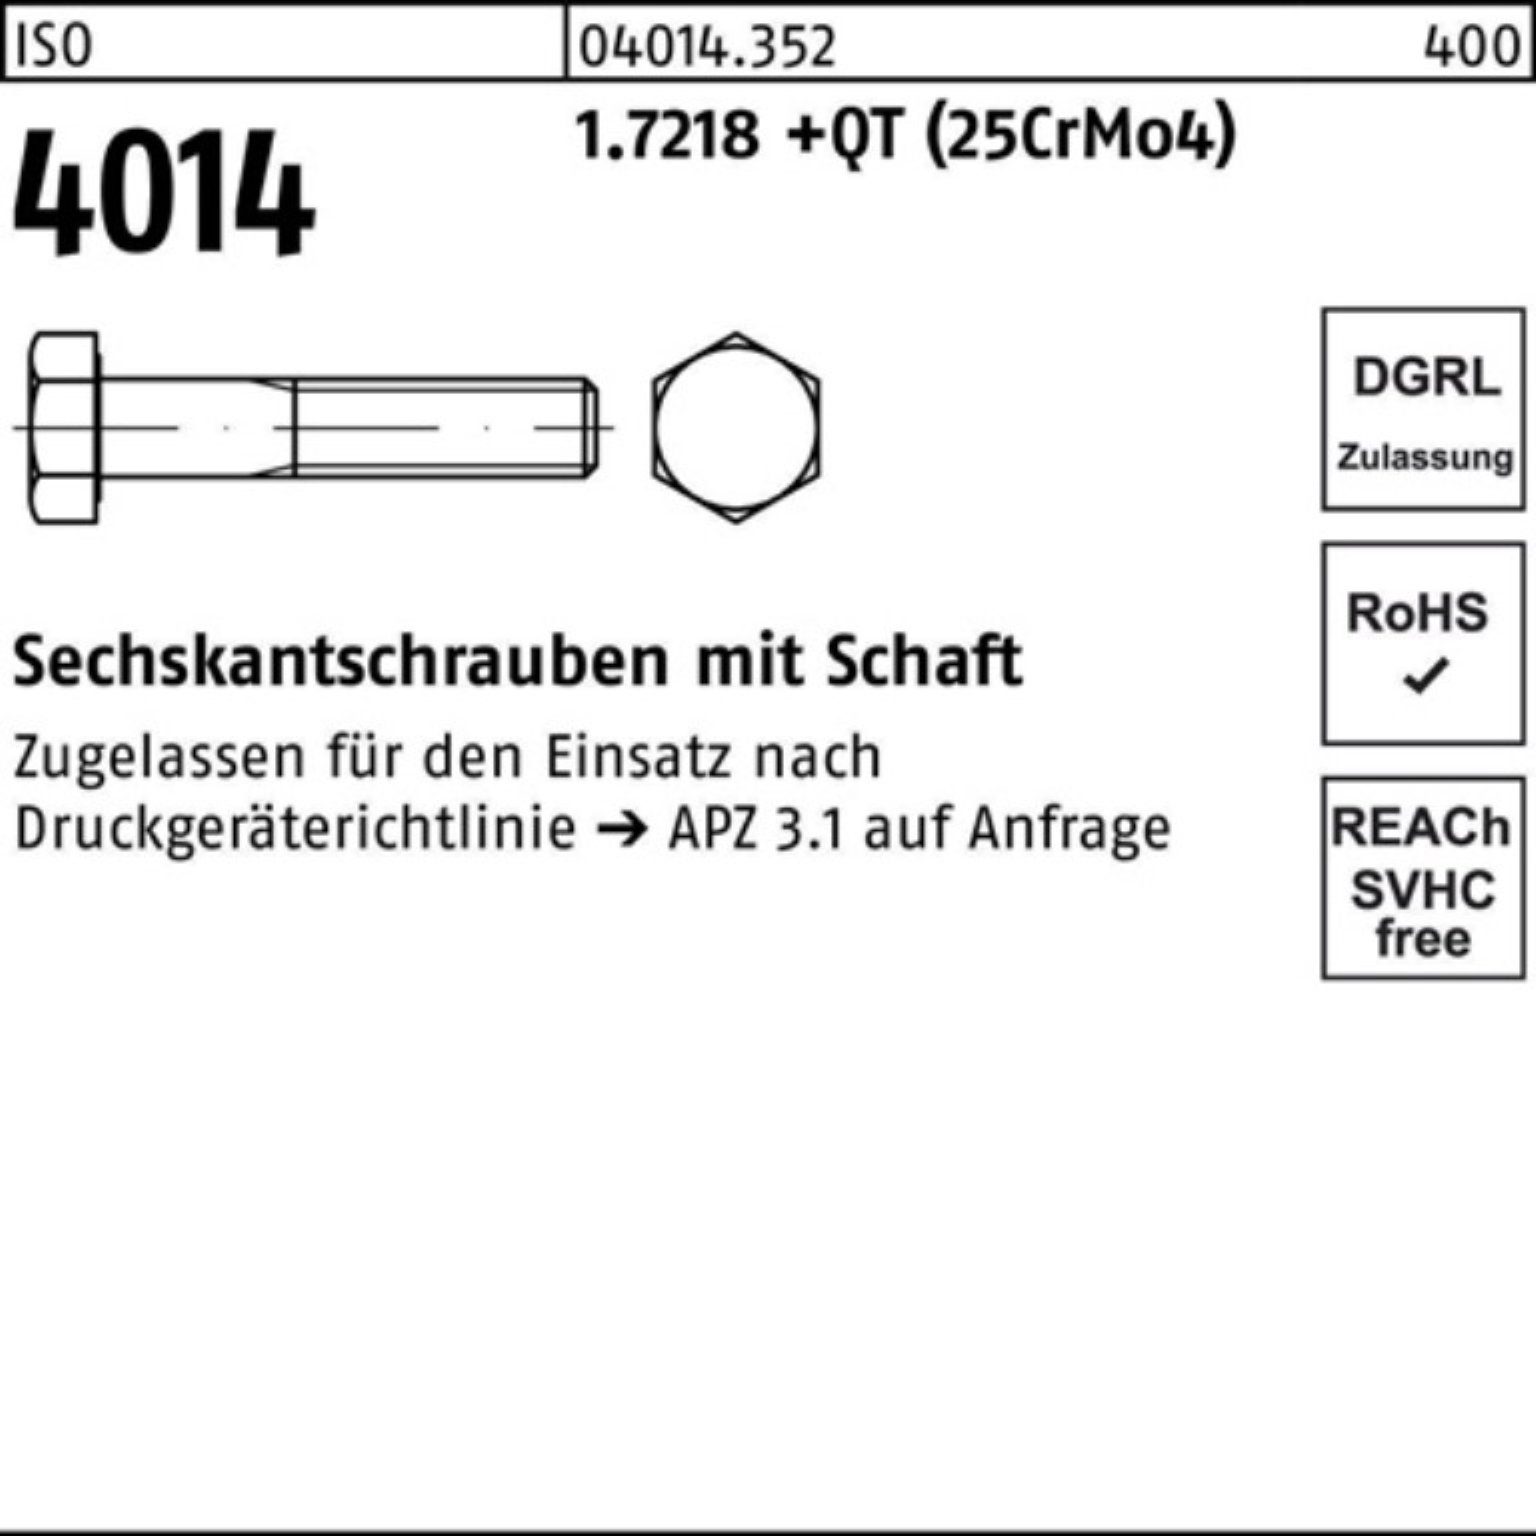 100er Pack (25Cr Sechskantschraube 1.7218 200 Sechskantschraube Bufab Schaft 4014 ISO +QT M20x